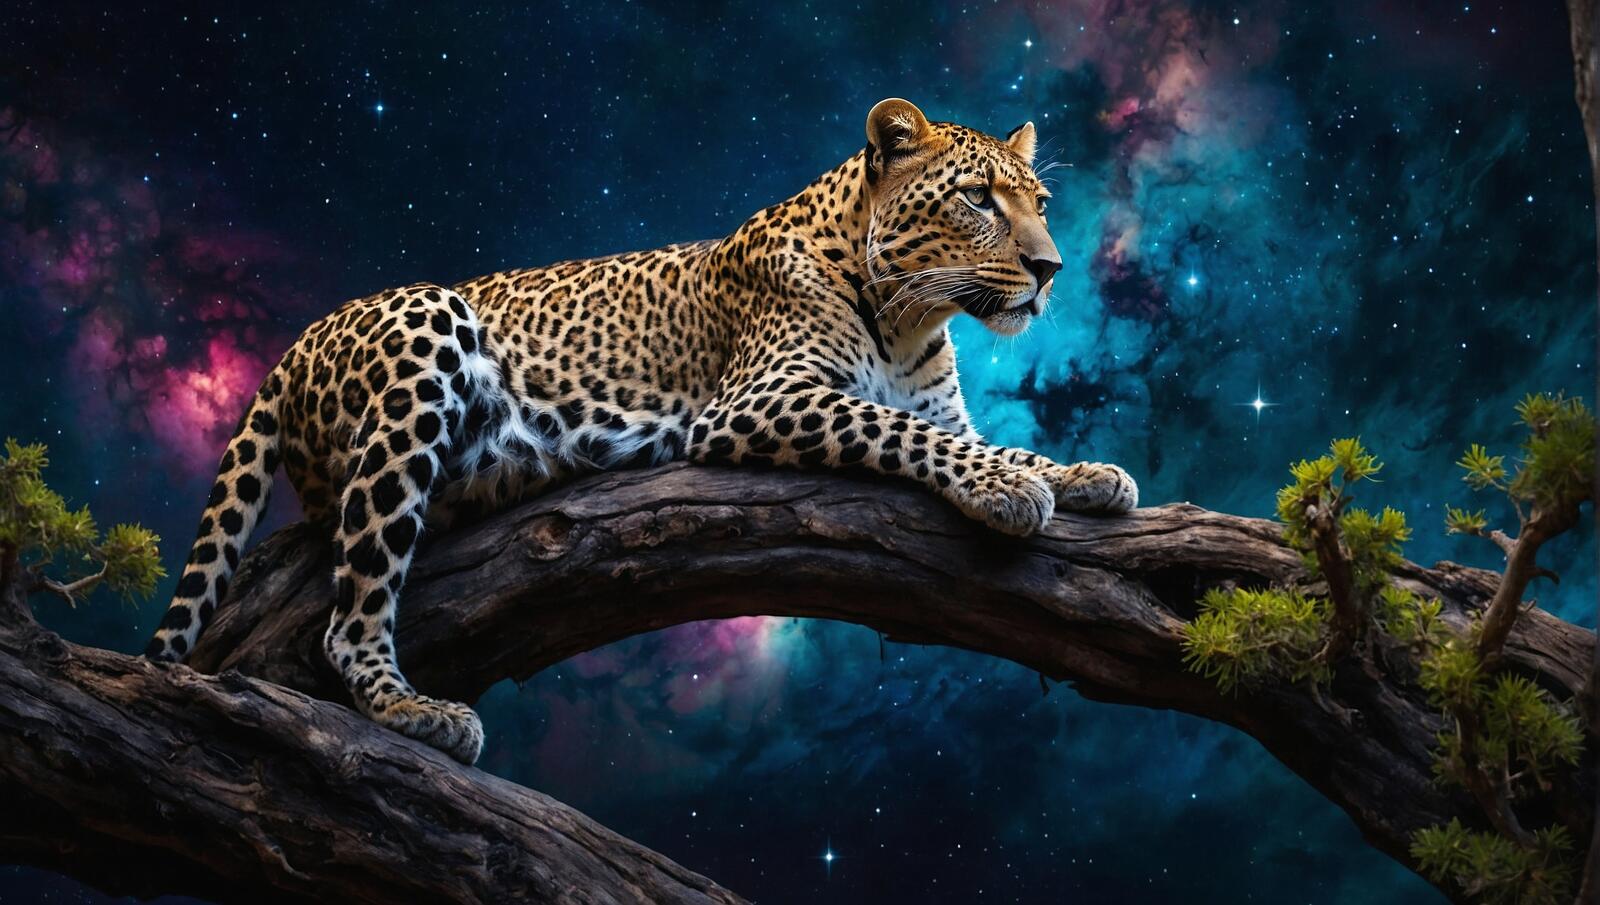 Бесплатное фото Картина с изображением леопарда на ветке дерева под звездами